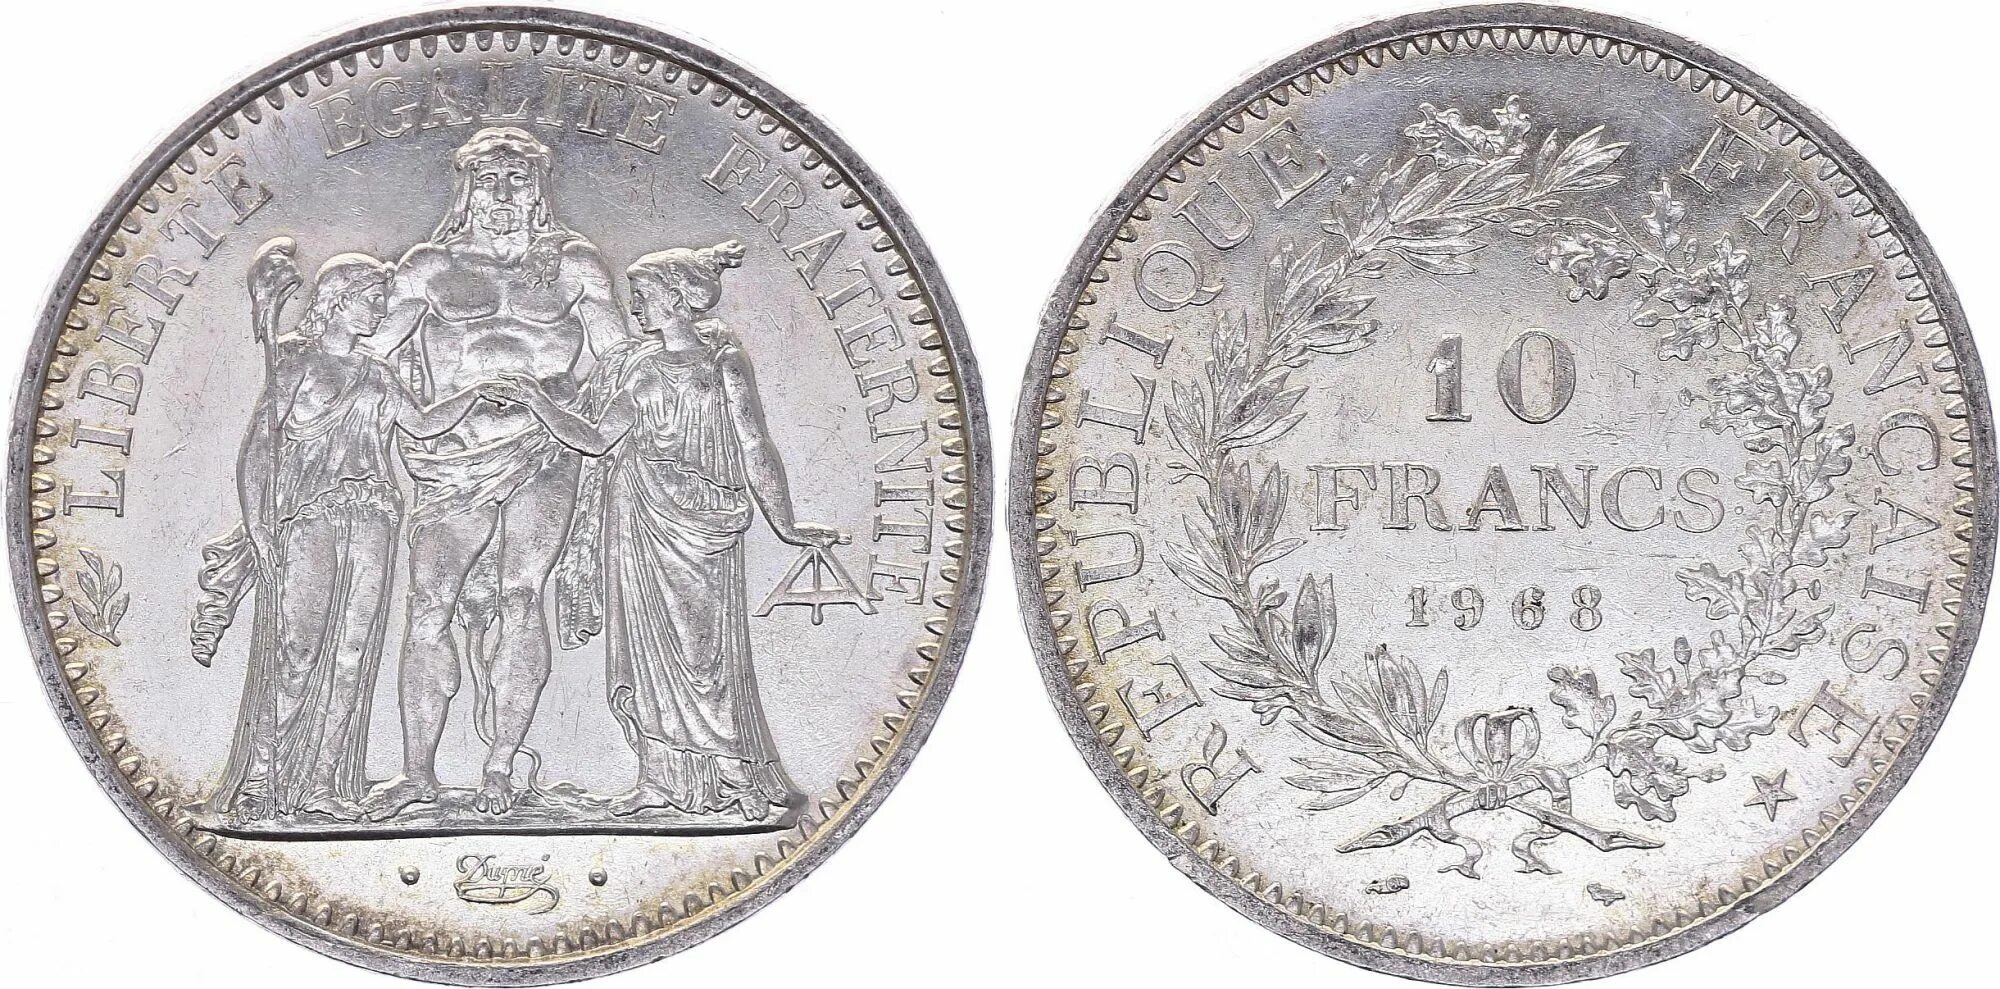 French 10. 10 Francs. Монета 50 Francs, Франция, 1878-1904. Монета серебро Геркулес. Франкрейх серебряные монеты средневековые.